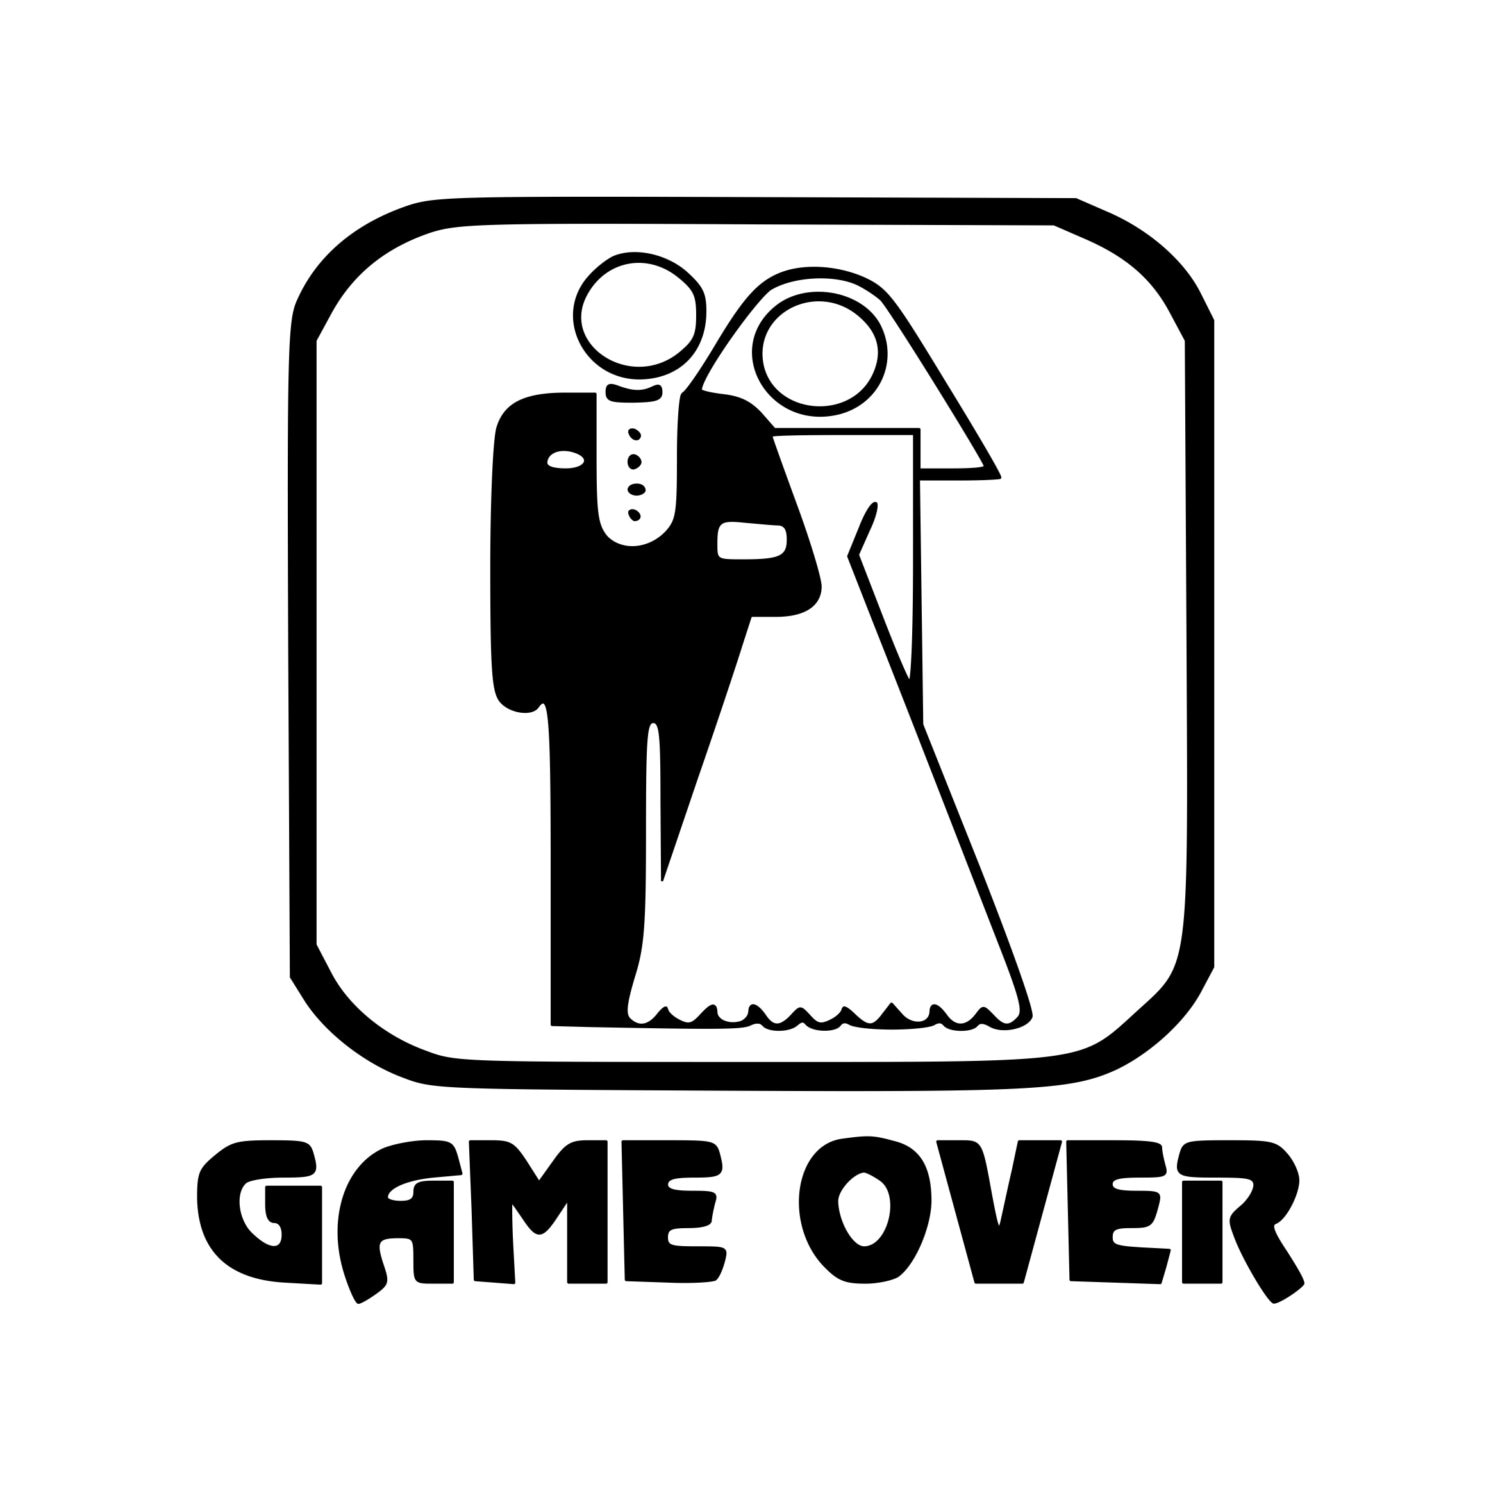 Fine del gioco: Quando il matrimonio diventa ‘game over’